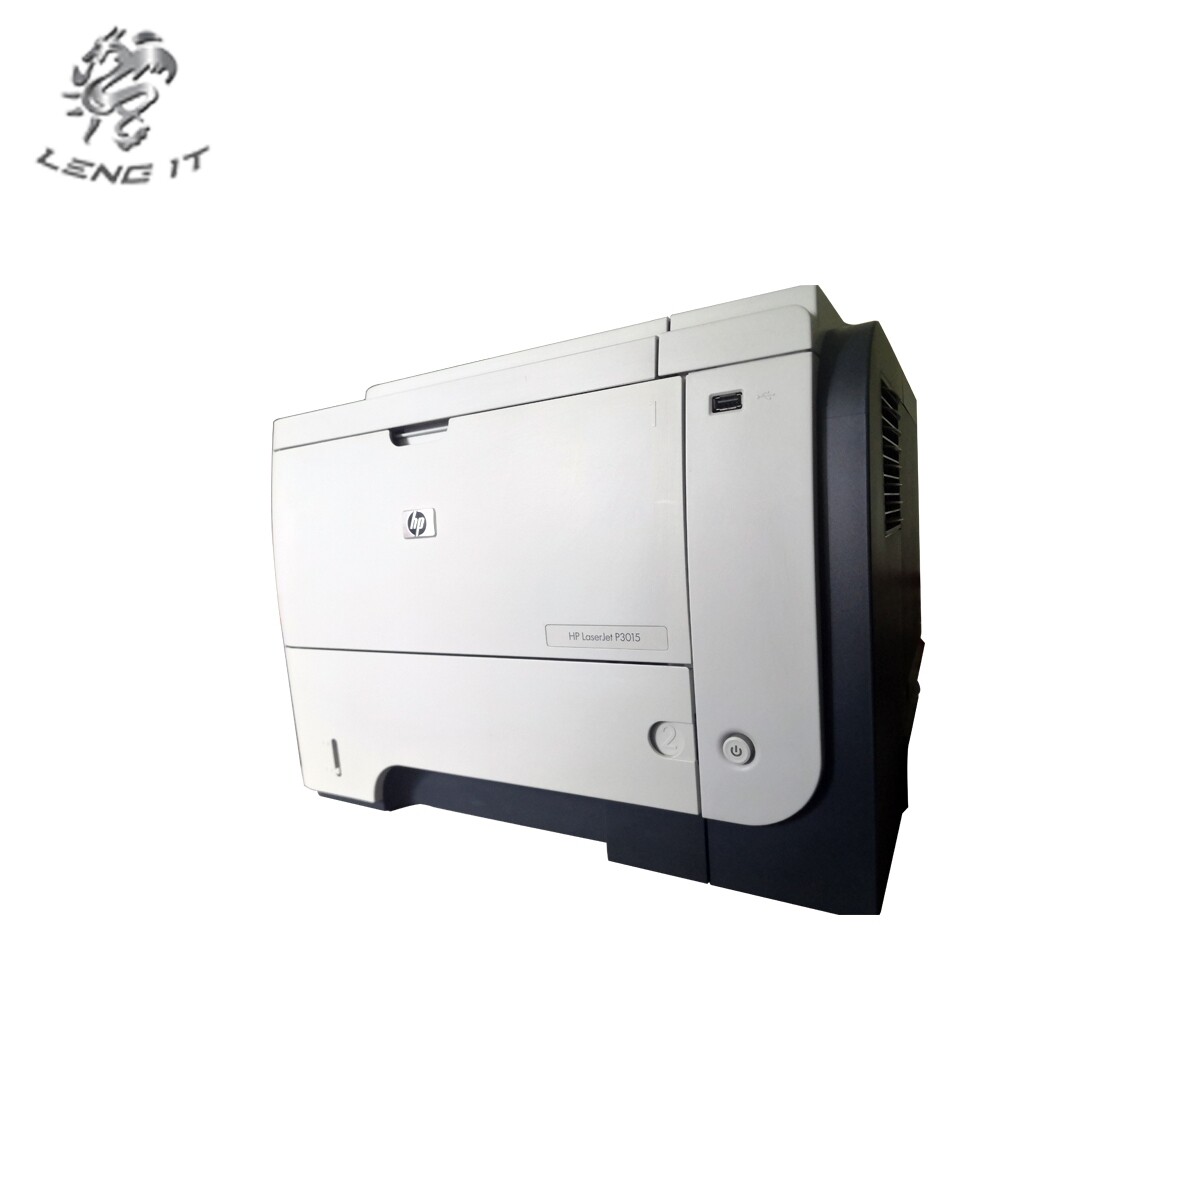 เครื่องปริ้น HP LaserJet Printer P3015 มือสอง ขาว-ดำ 40 แผ่นต่อนาที (A4) 1200x1200 dpi